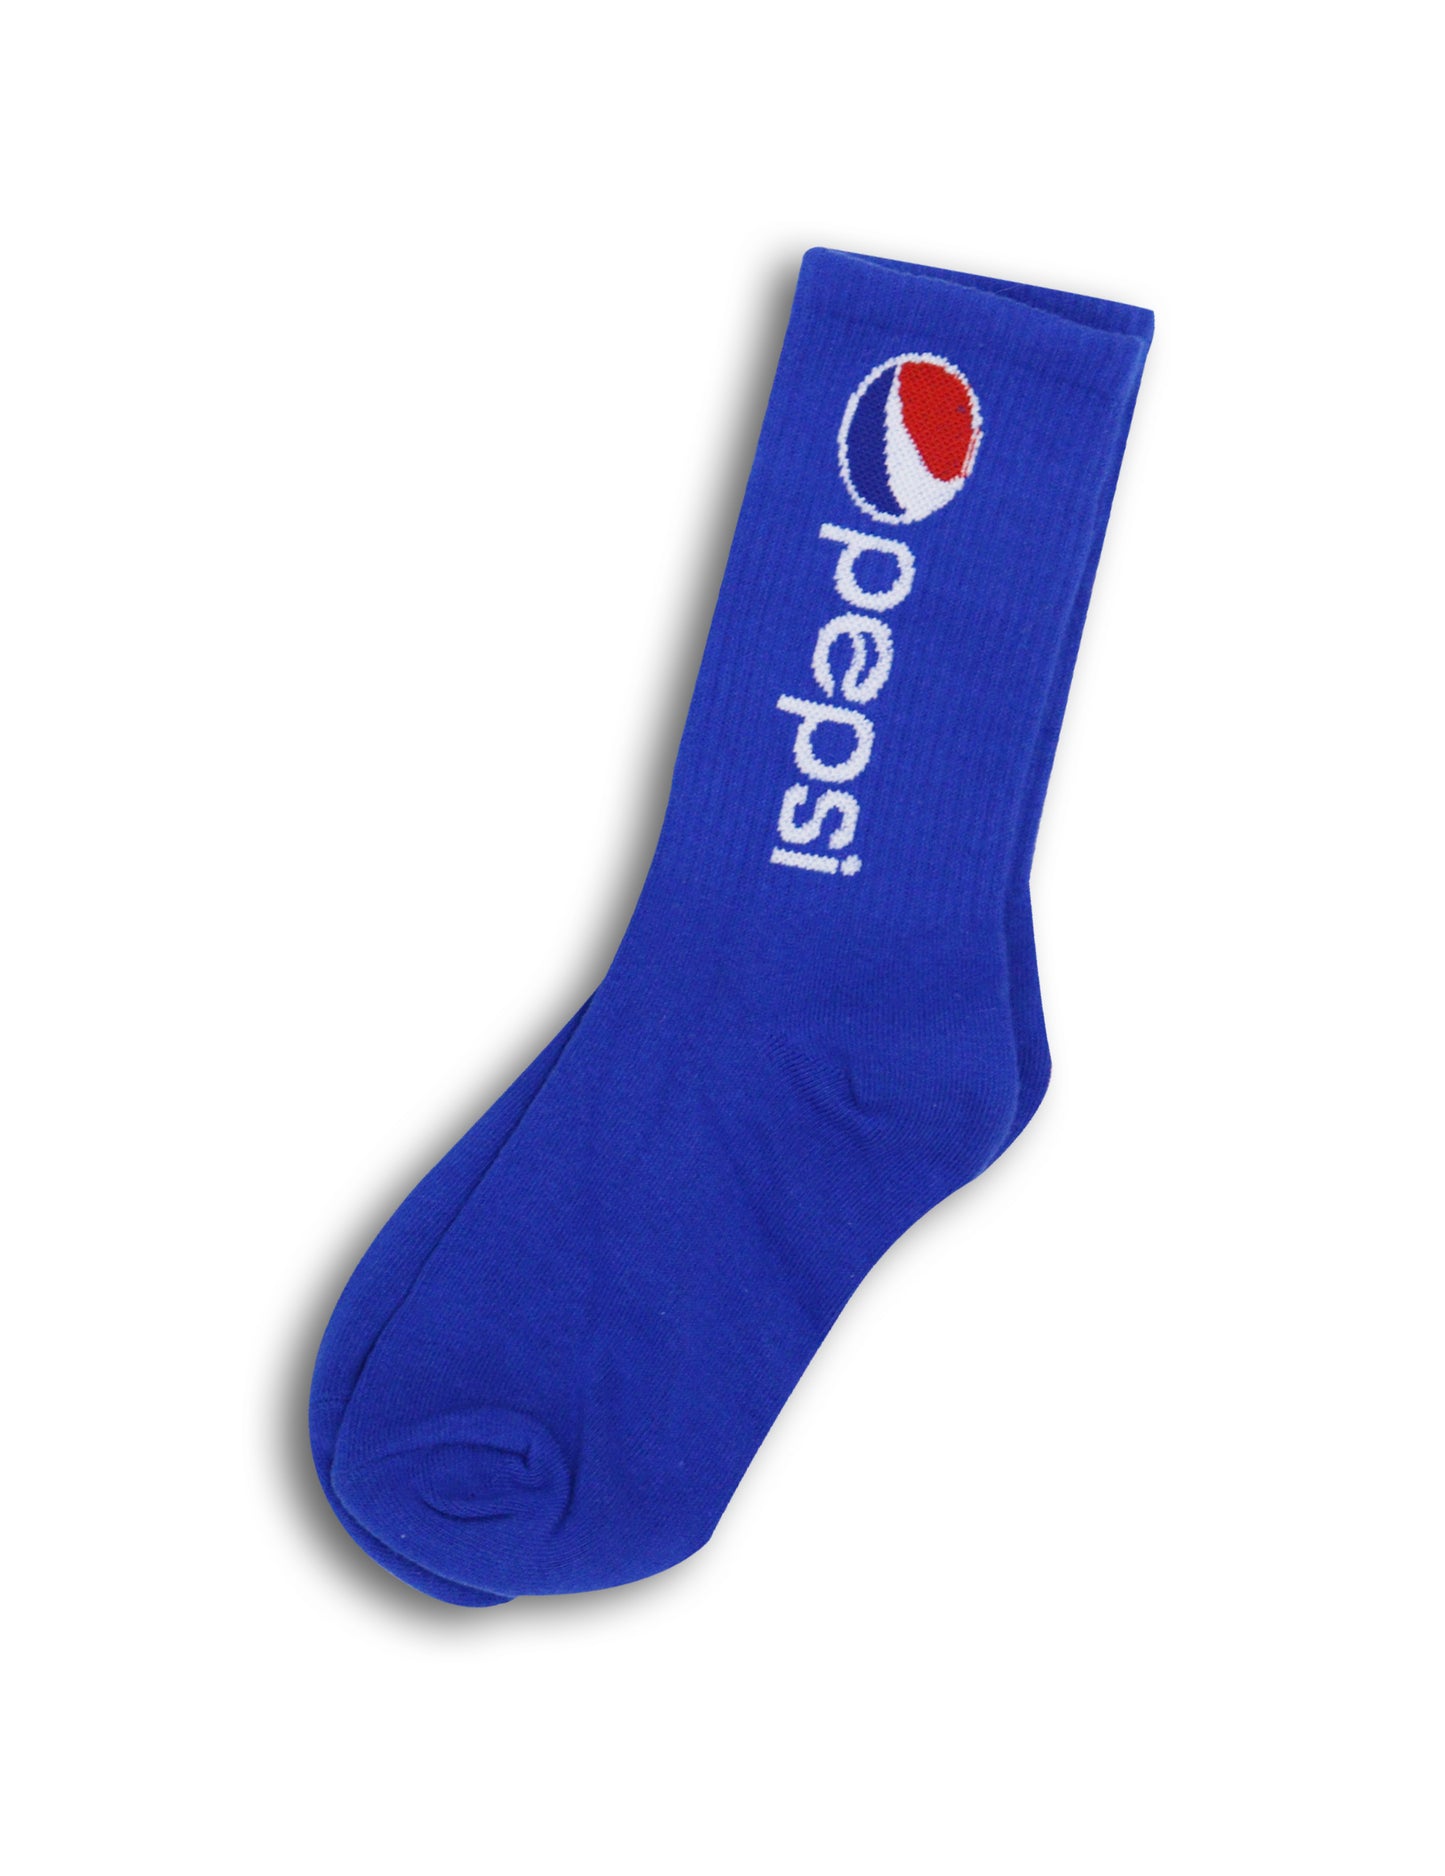 Pepsi Unisex Mid Calf Socks